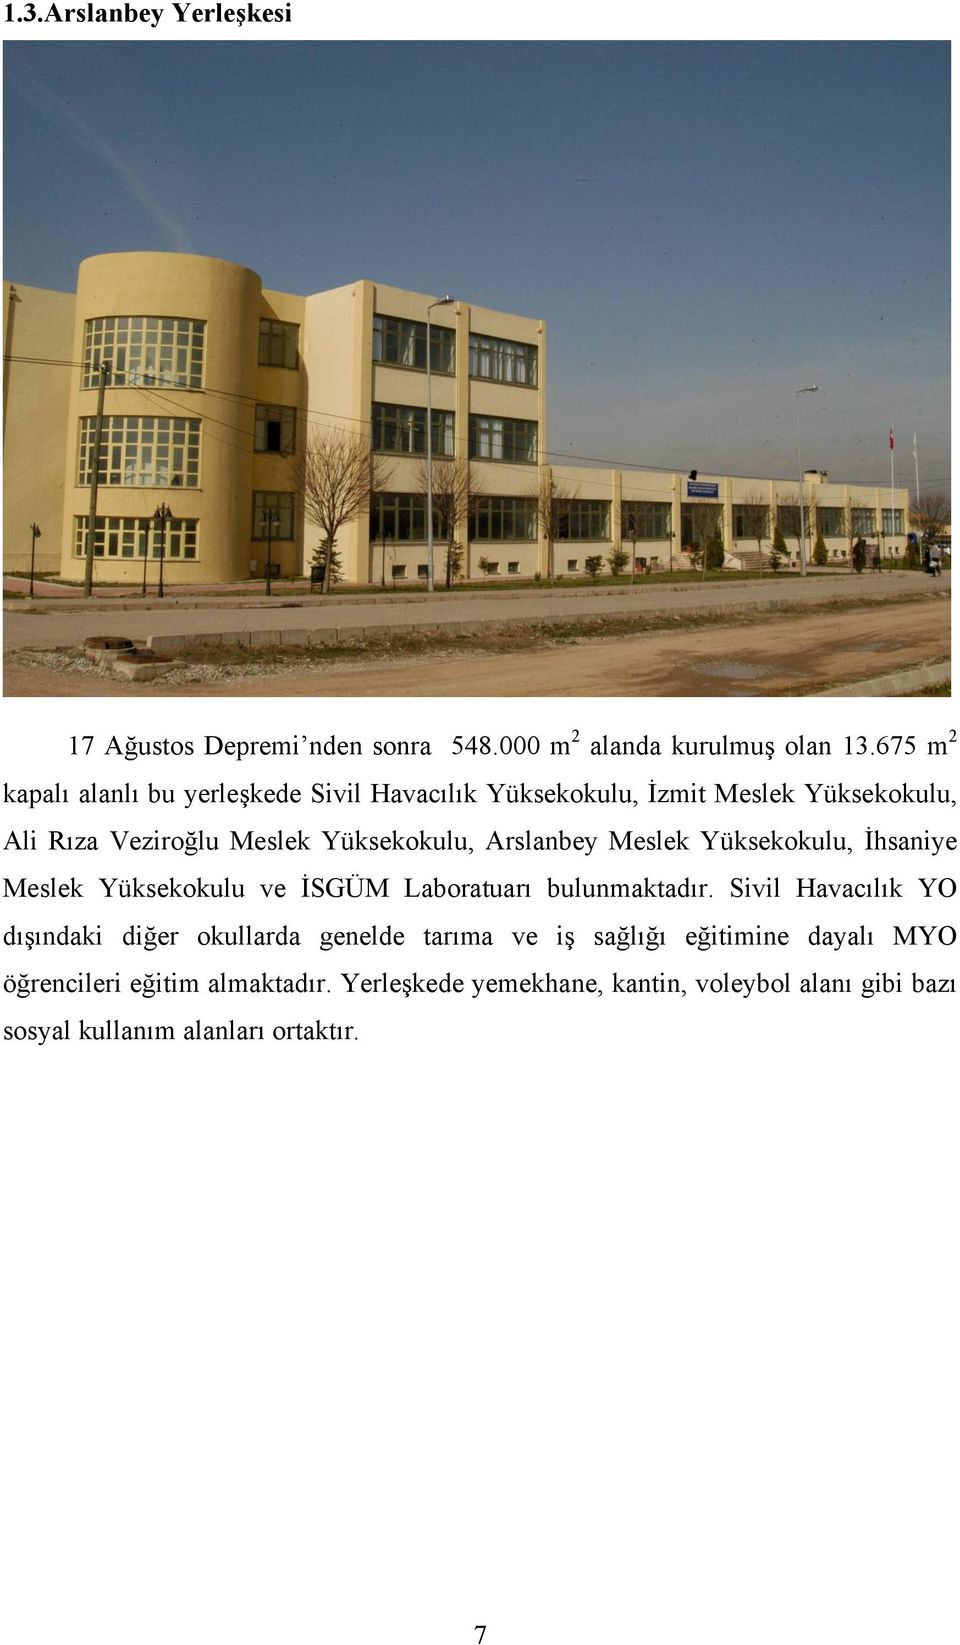 Arslanbey Meslek Yüksekokulu, İhsaniye Meslek Yüksekokulu ve İSGÜM Laboratuarı bulunmaktadır.